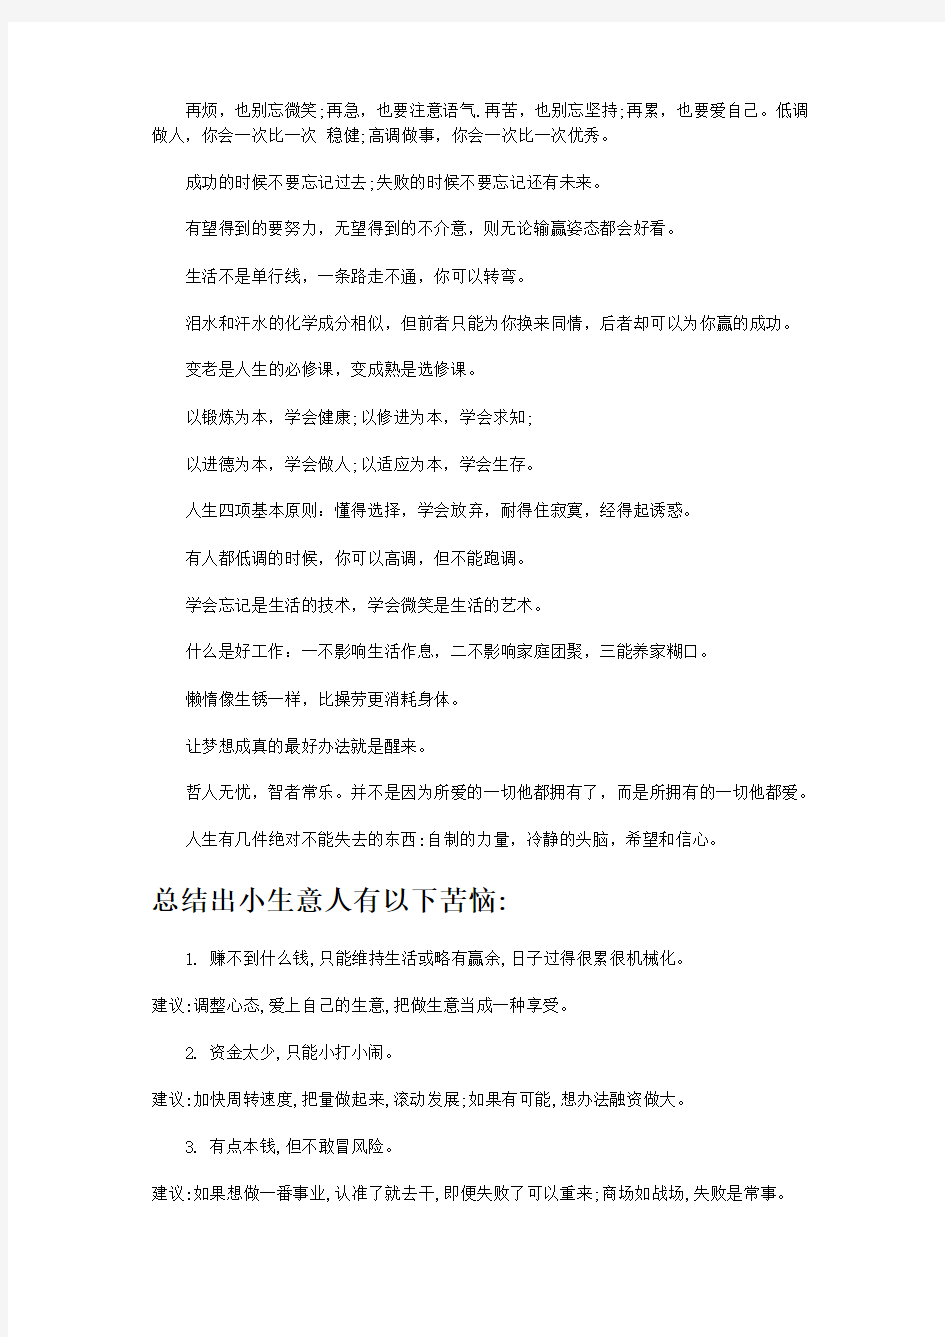 亚洲销售女神徐鹤宁经典语录——太过精辟,不学必悔